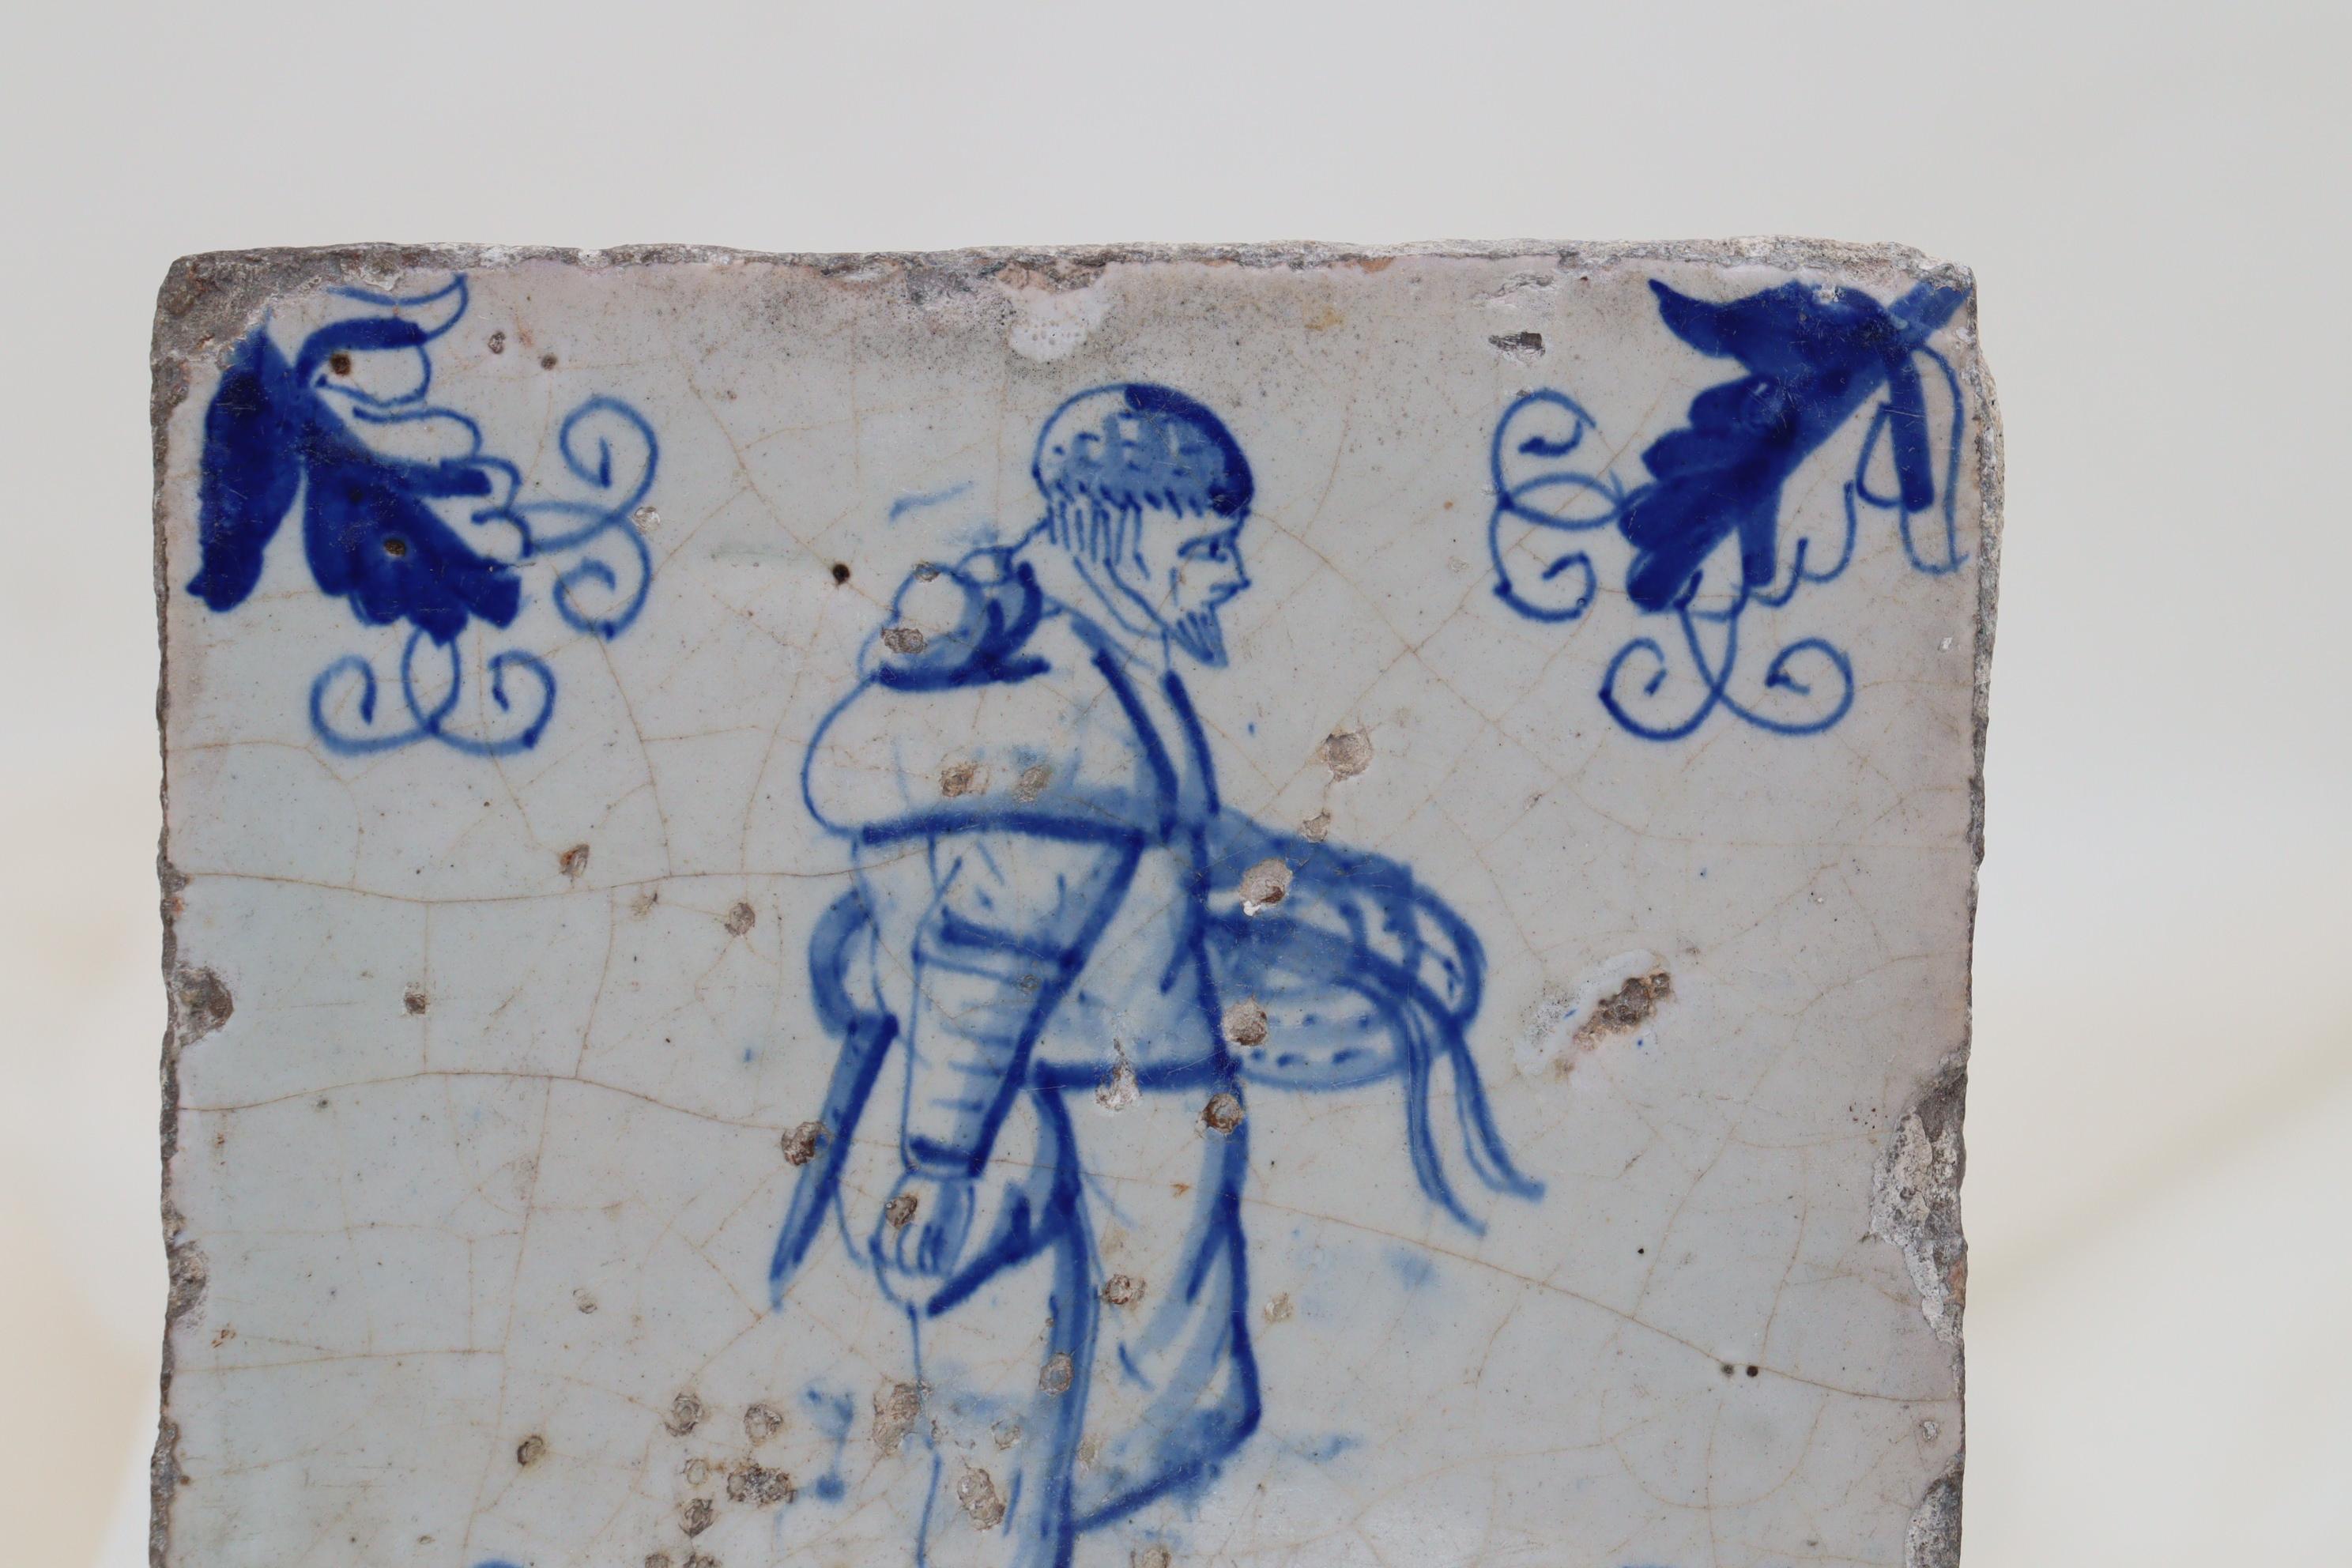 Diese holländische Delft-Kachel aus dem 17. Jahrhundert zeigt in der Mitte die handgemalte Figur eines Mannes, der einen blauen Korb trägt, und an den Ecken Motive von Kriechblättern. Die Figur könnte einen Korb mit Aalen tragen, die in den